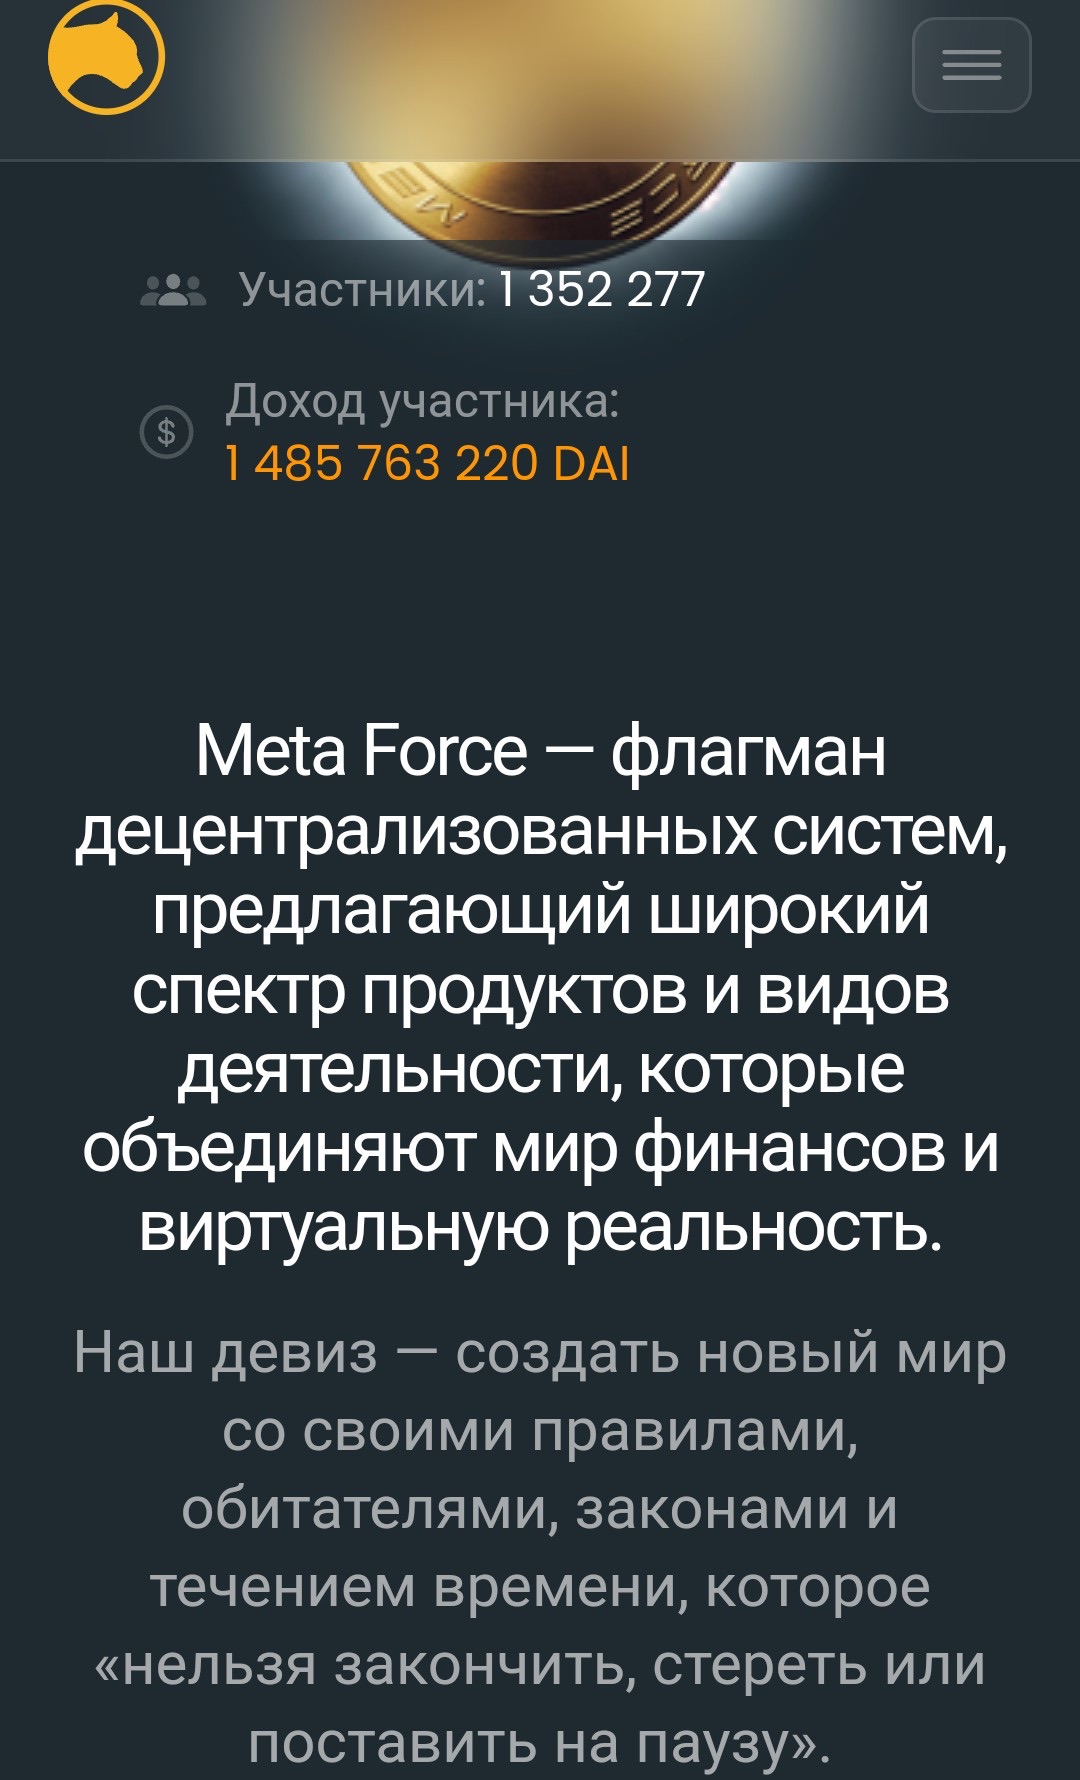 Описание Meta force